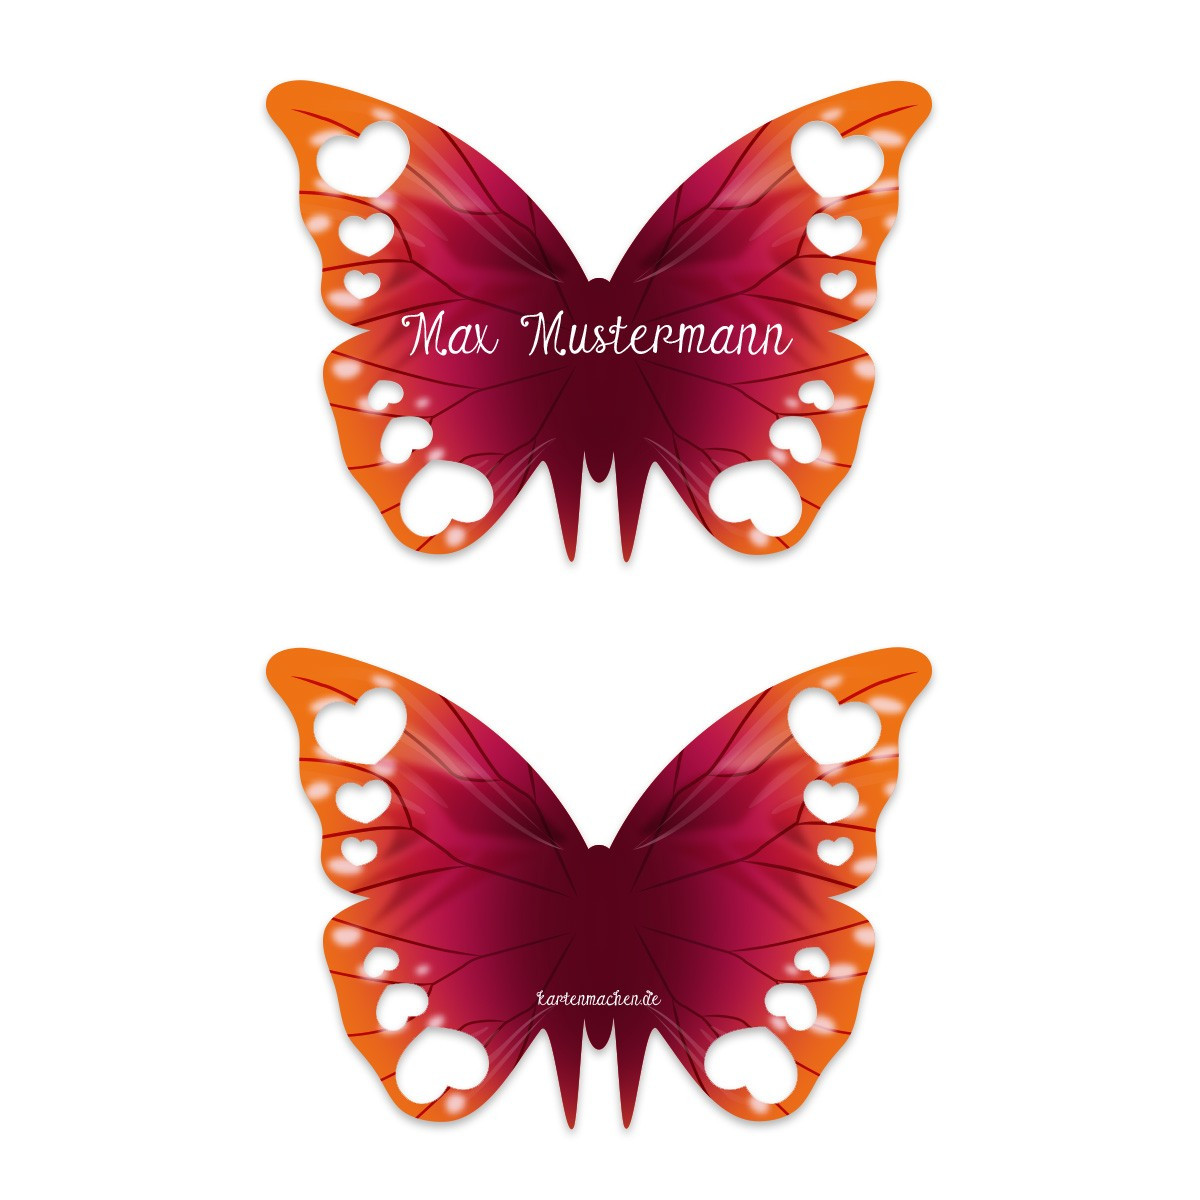 Schmetterling Hochzeit
 Tischkarte zur Hochzeit als Schmetterling Lila